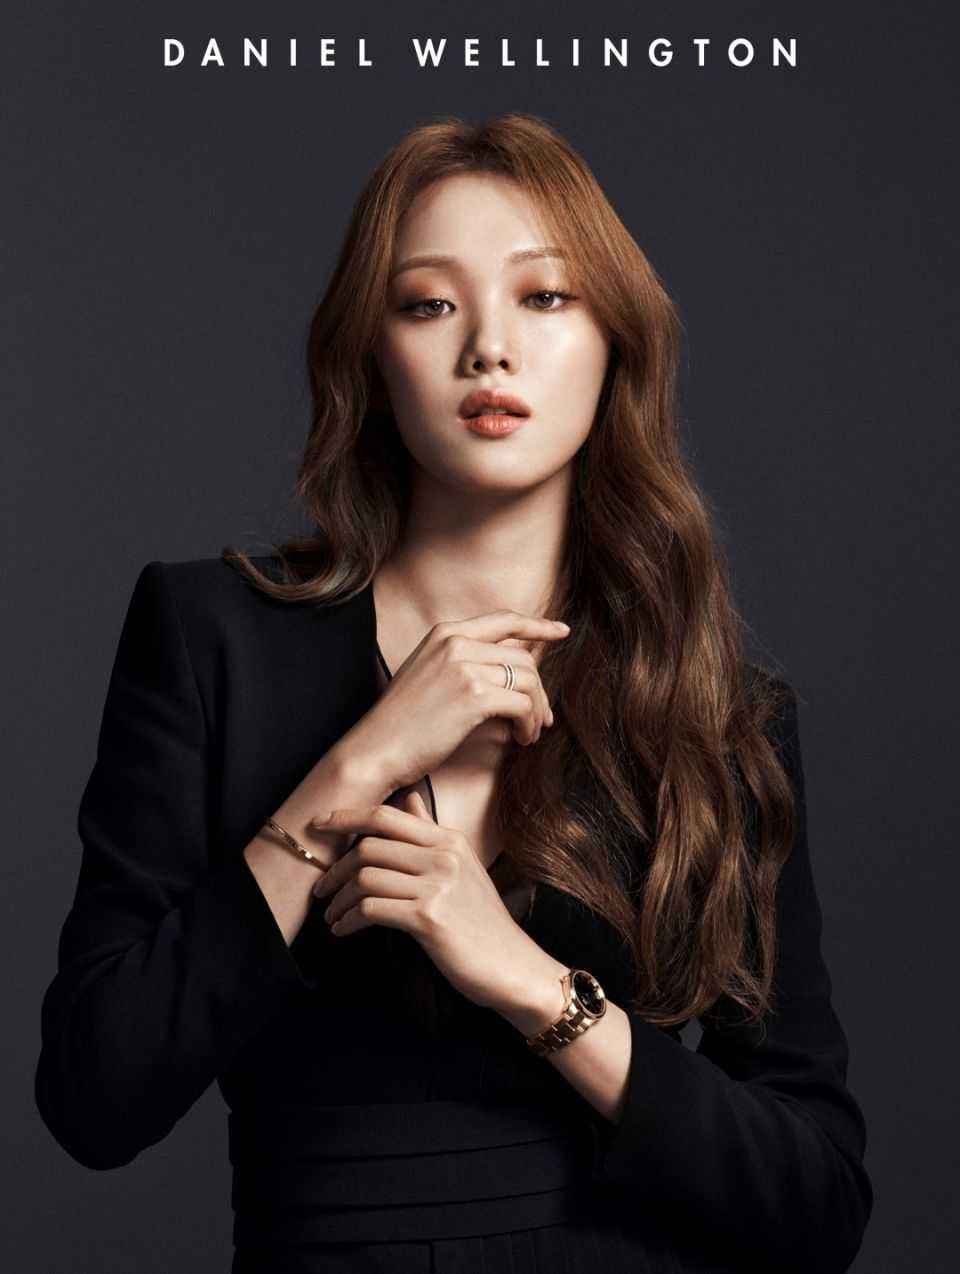 韩国女明星代言的手表的简单介绍